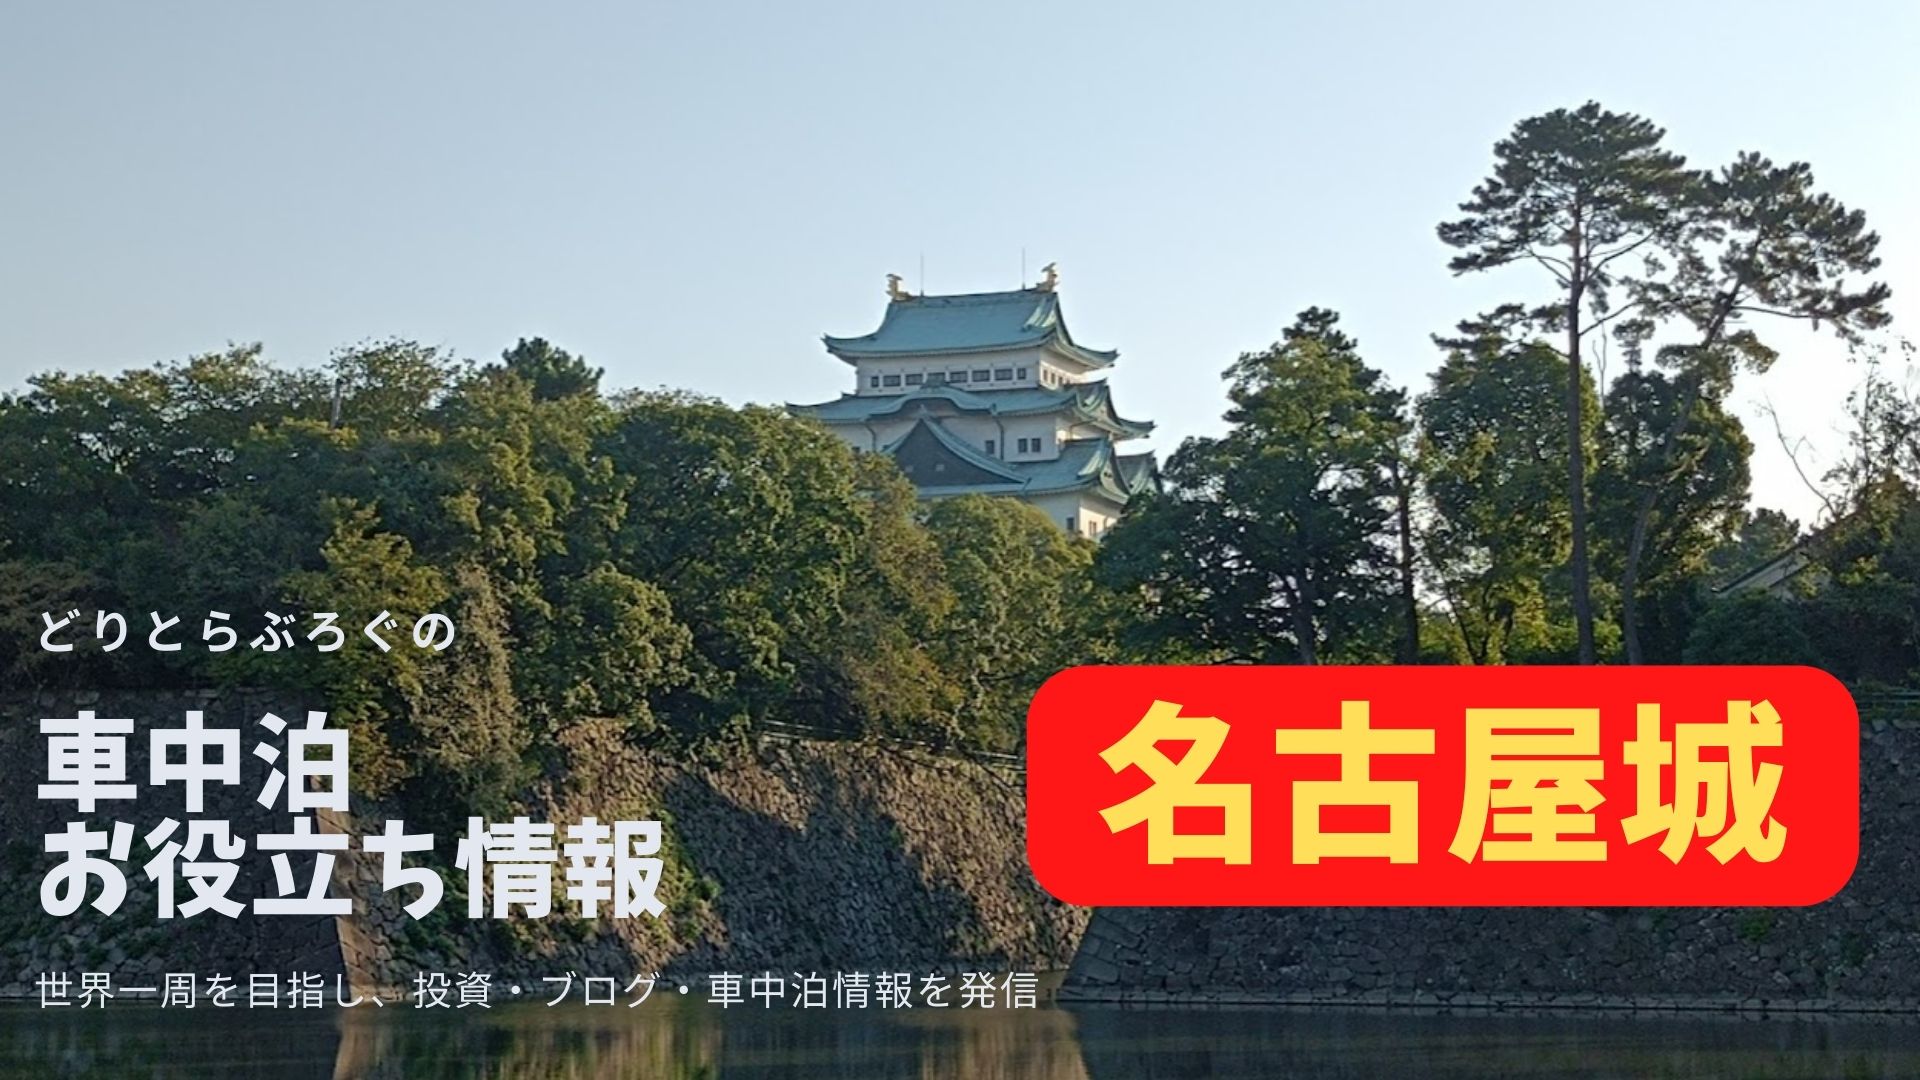 名古屋城付近の車中泊はコインパーキングを提案 朝イチの散歩で気持ち良い朝を迎えよう どりとらぶろぐ